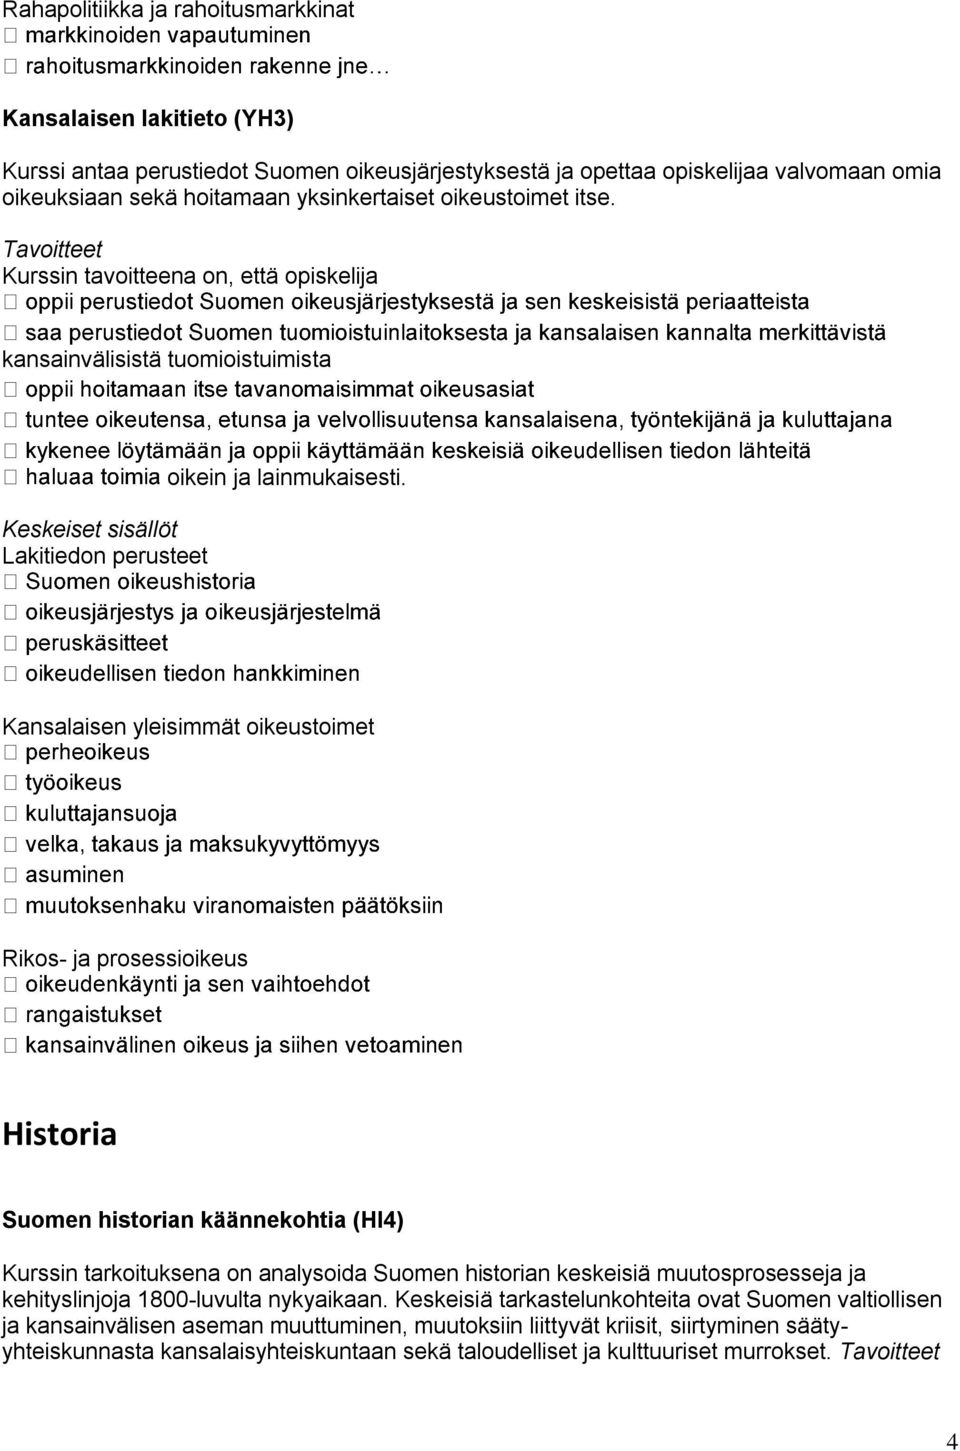 Kansalaisen yleisimmät oikeustoimet Rikos- ja prosessioikeus Historia Suomen historian käännekohtia (HI4) Kurssin tarkoituksena on analysoida Suomen historian keskeisiä muutosprosesseja ja